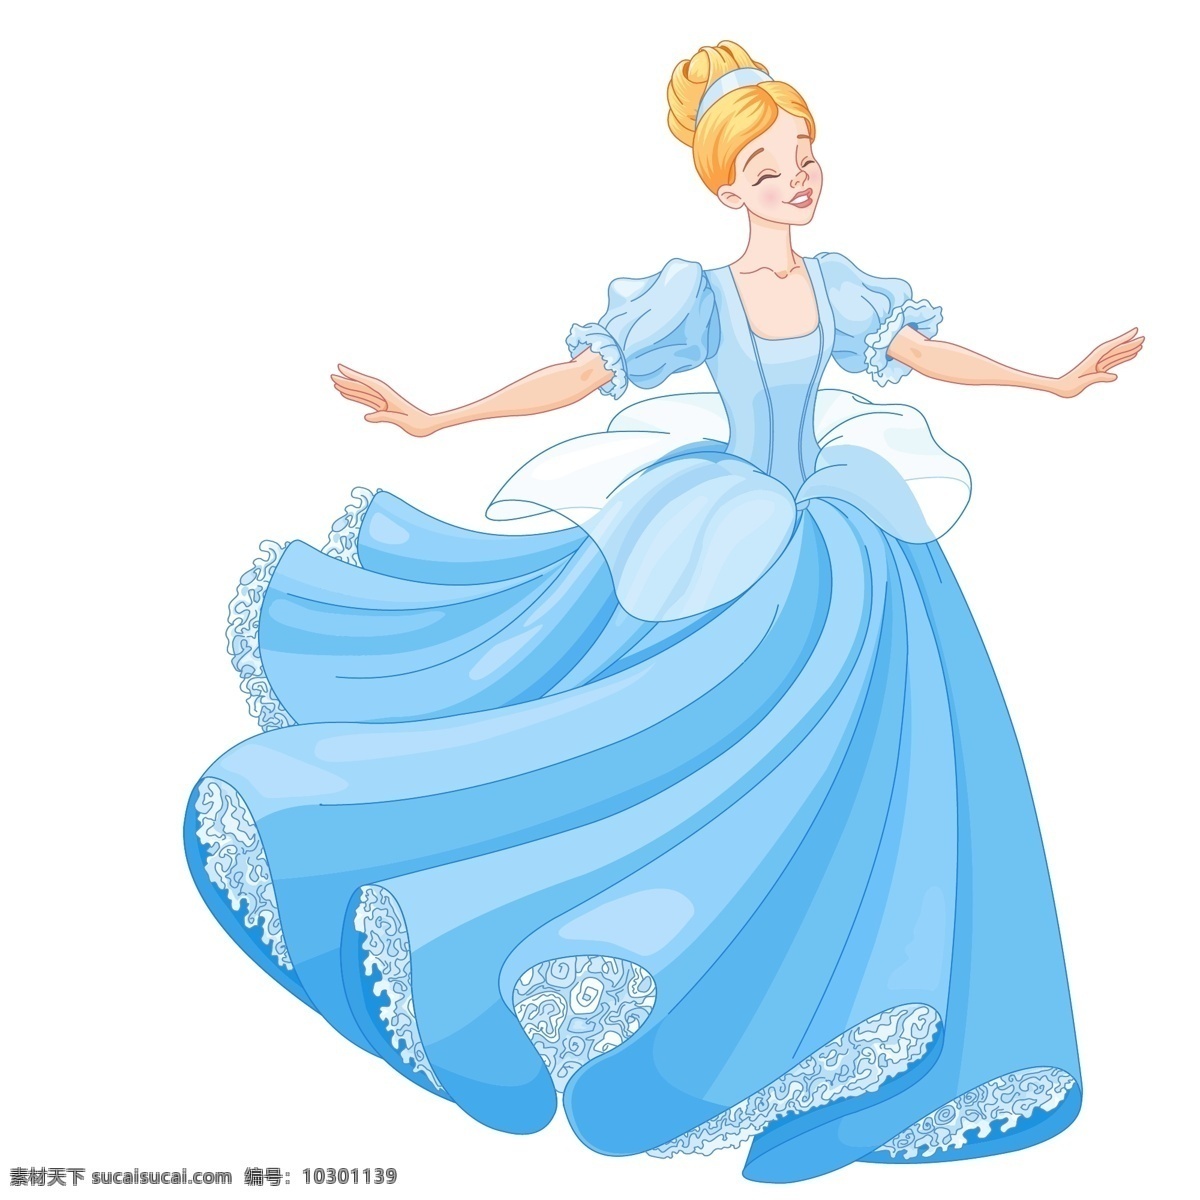 公主图片 公主 公主裙 裙子 花边 蓝色 跳舞 动漫动画 动漫人物